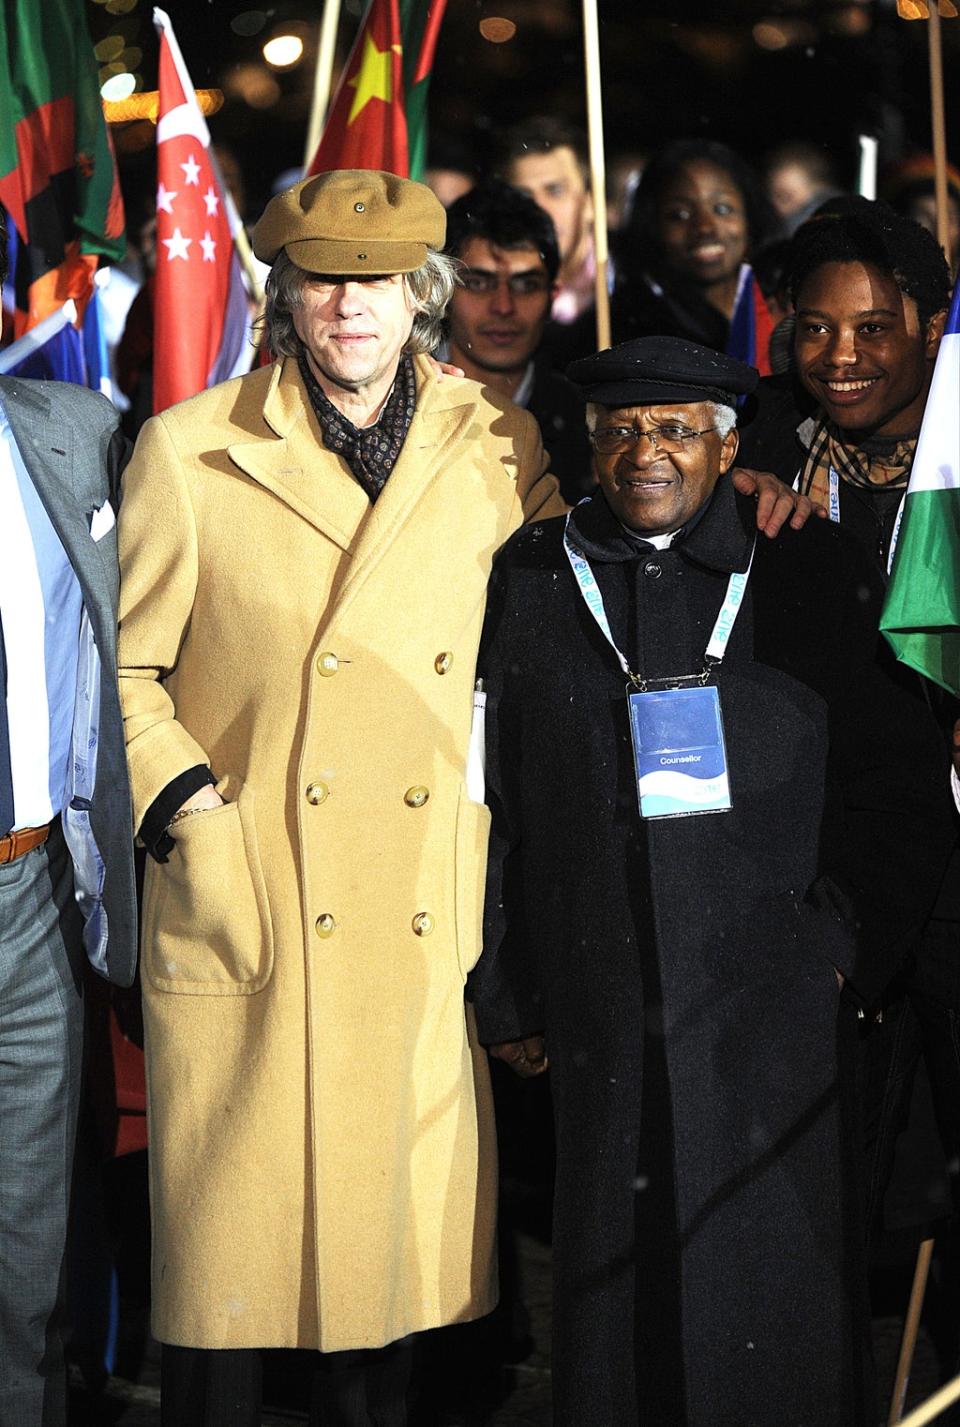 Archbishop Desmond Tutu and Sir Bob Geldof at Old Billingsgate, London, in 2010 (Zak Hussein/PA)